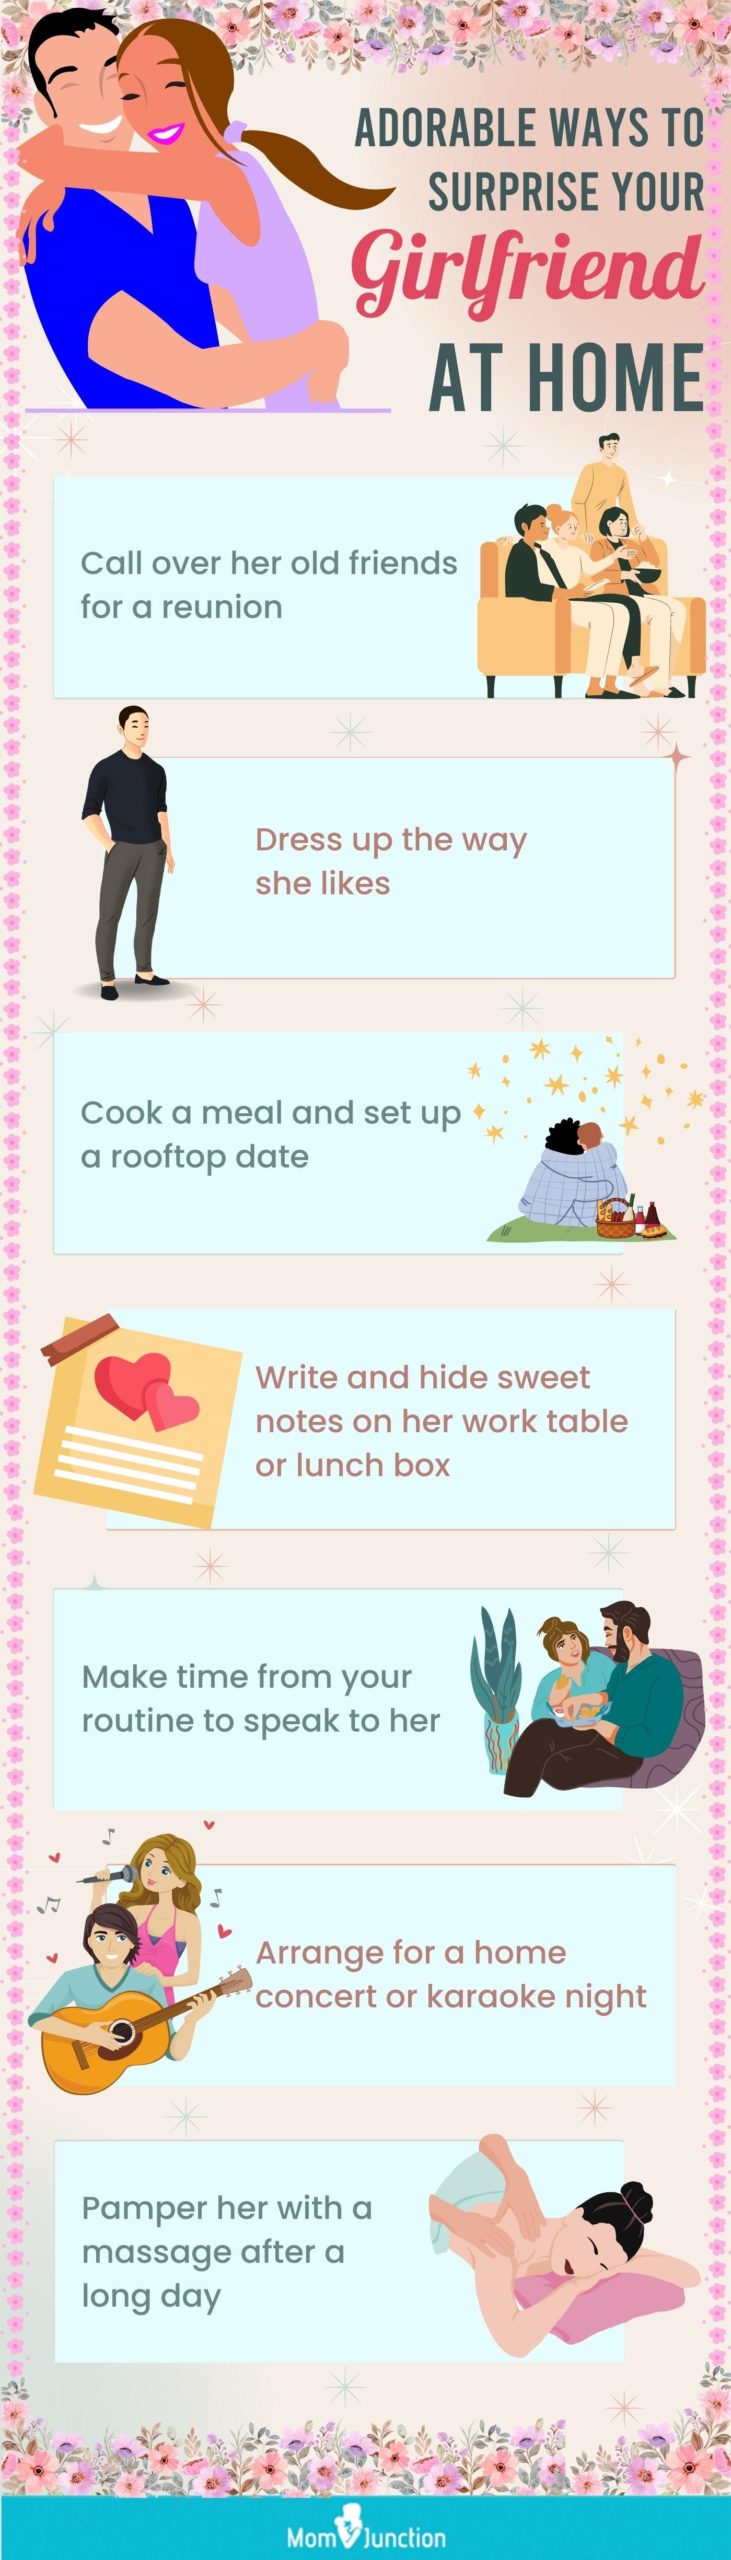 3 Ways to Meet Your Girlfriend's Parents - wikiHow